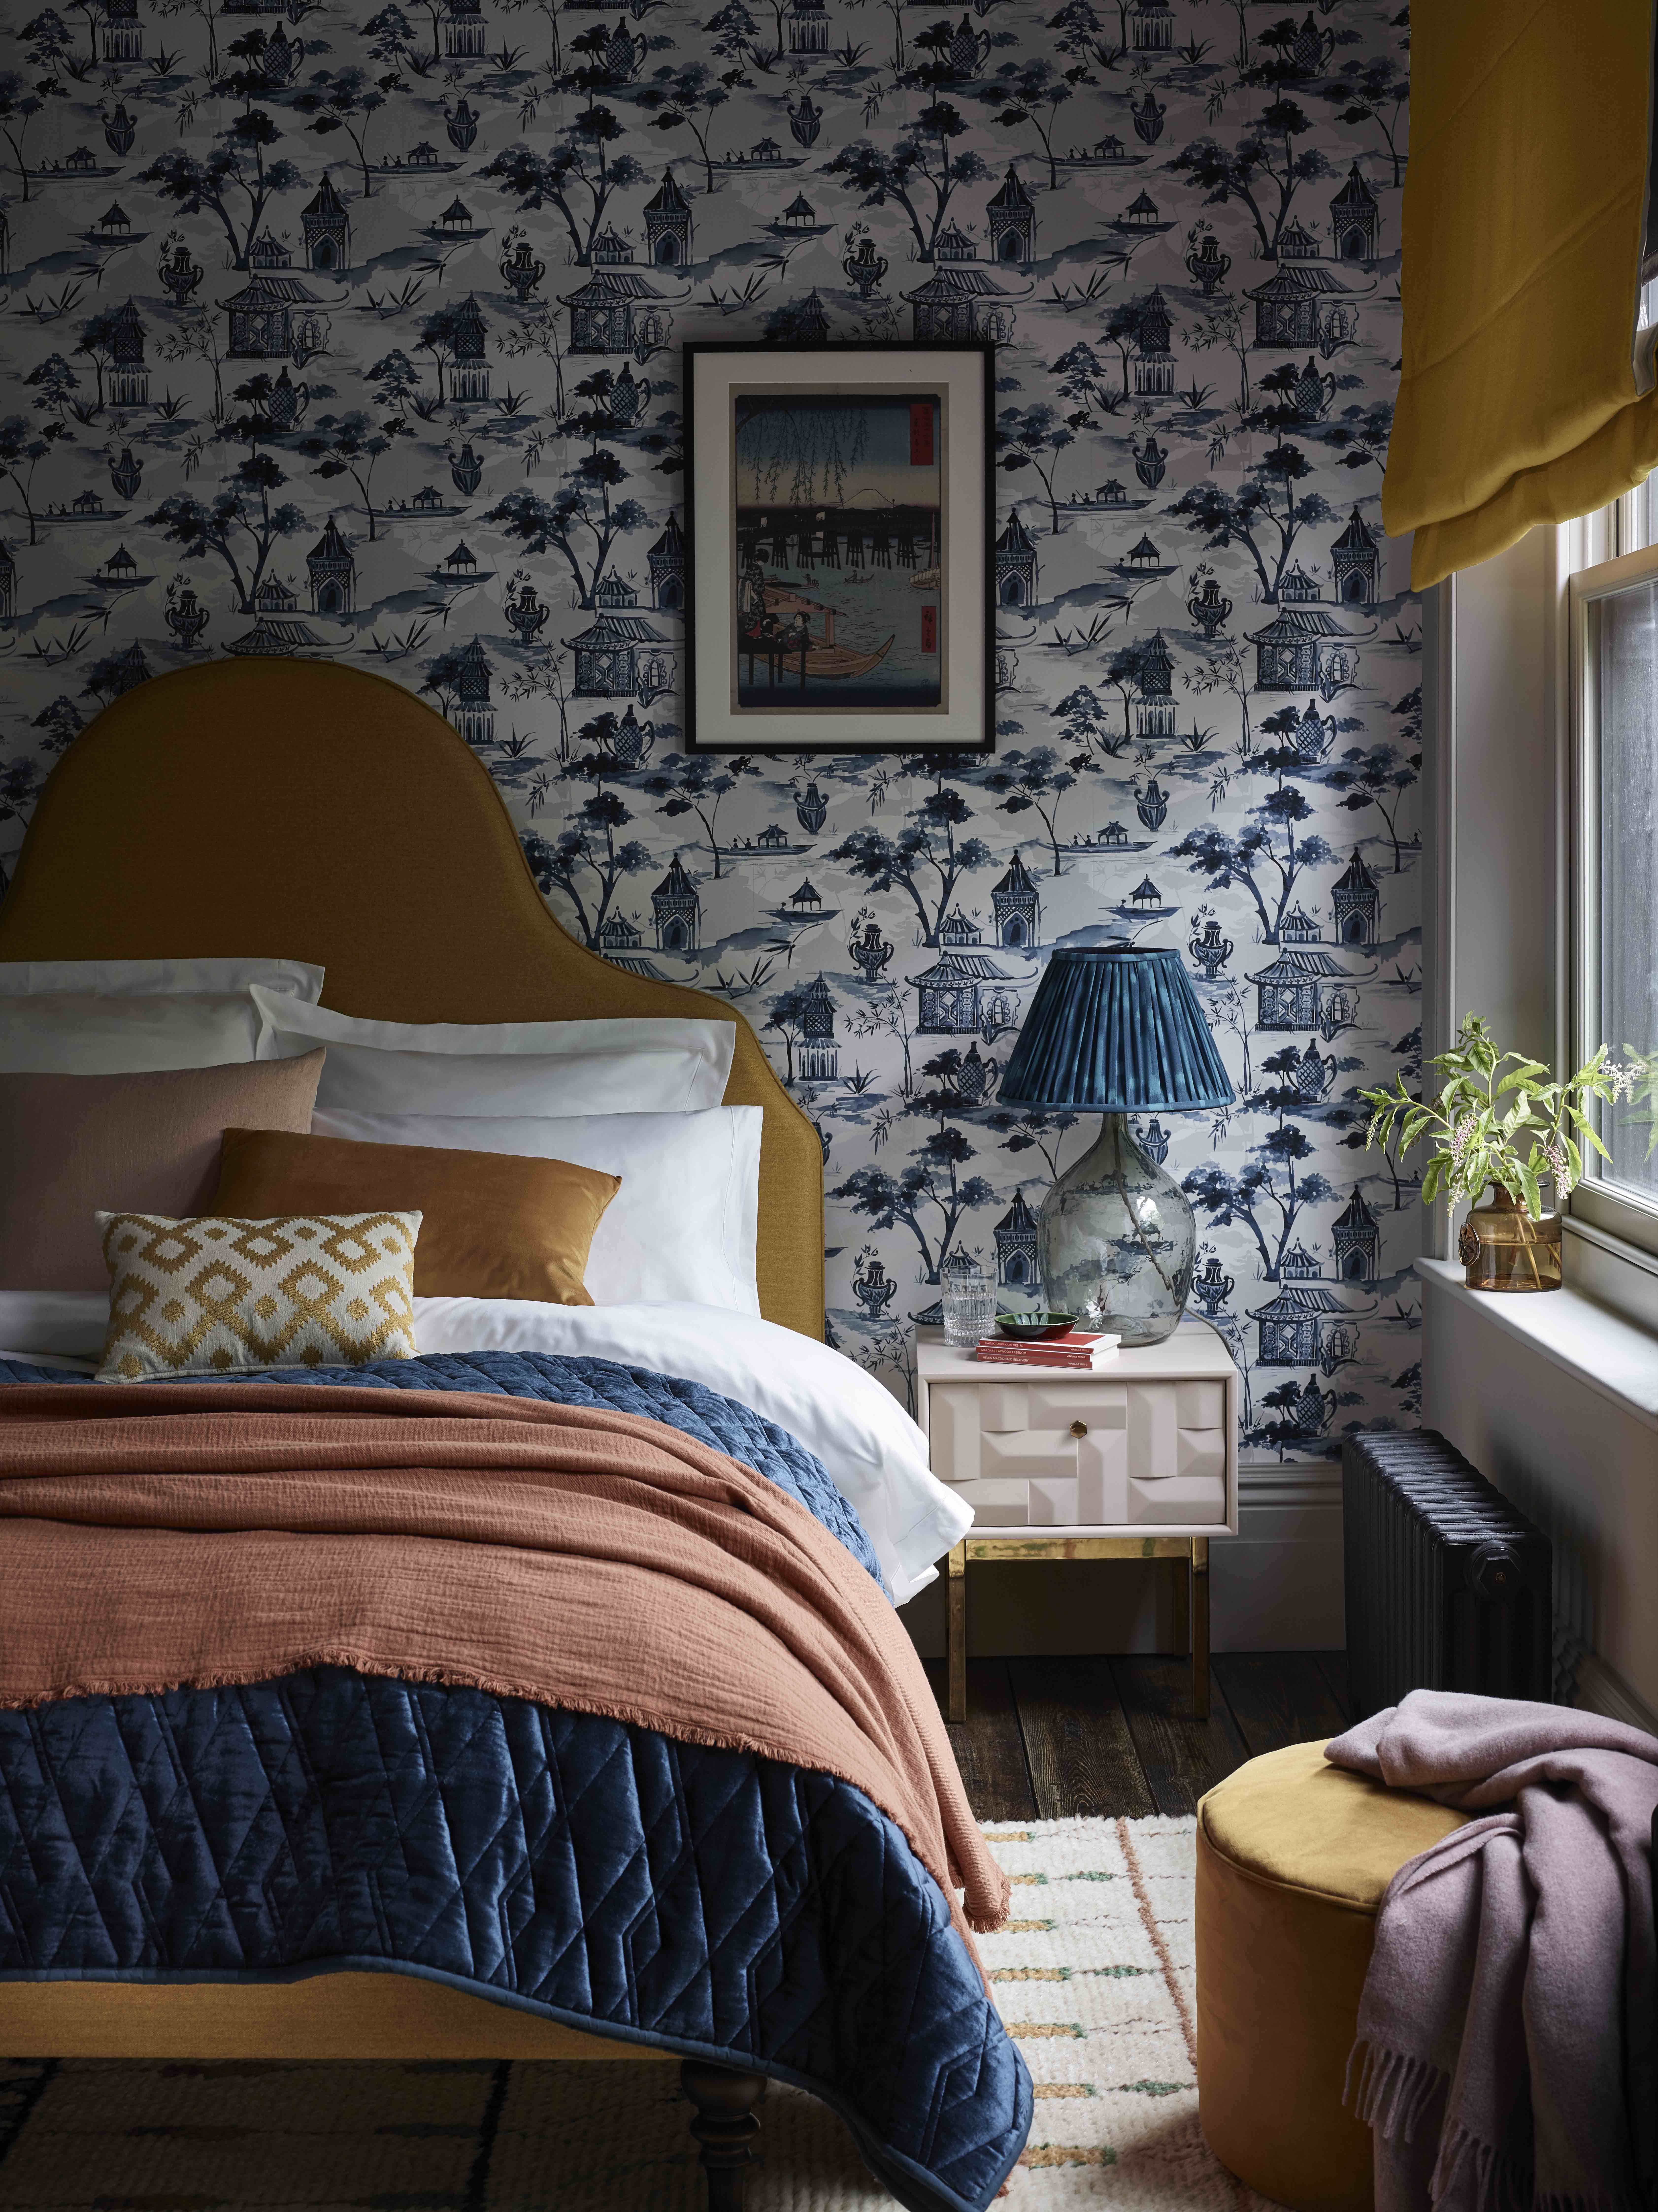 Trang trí phòng ngủ nhỏ: Những gợi ý trang trí phòng ngủ chủ đề nhỏ nhắn và dễ thương sẽ giúp không gian sống của bạn trở nên ấm áp và đầy cảm hứng.